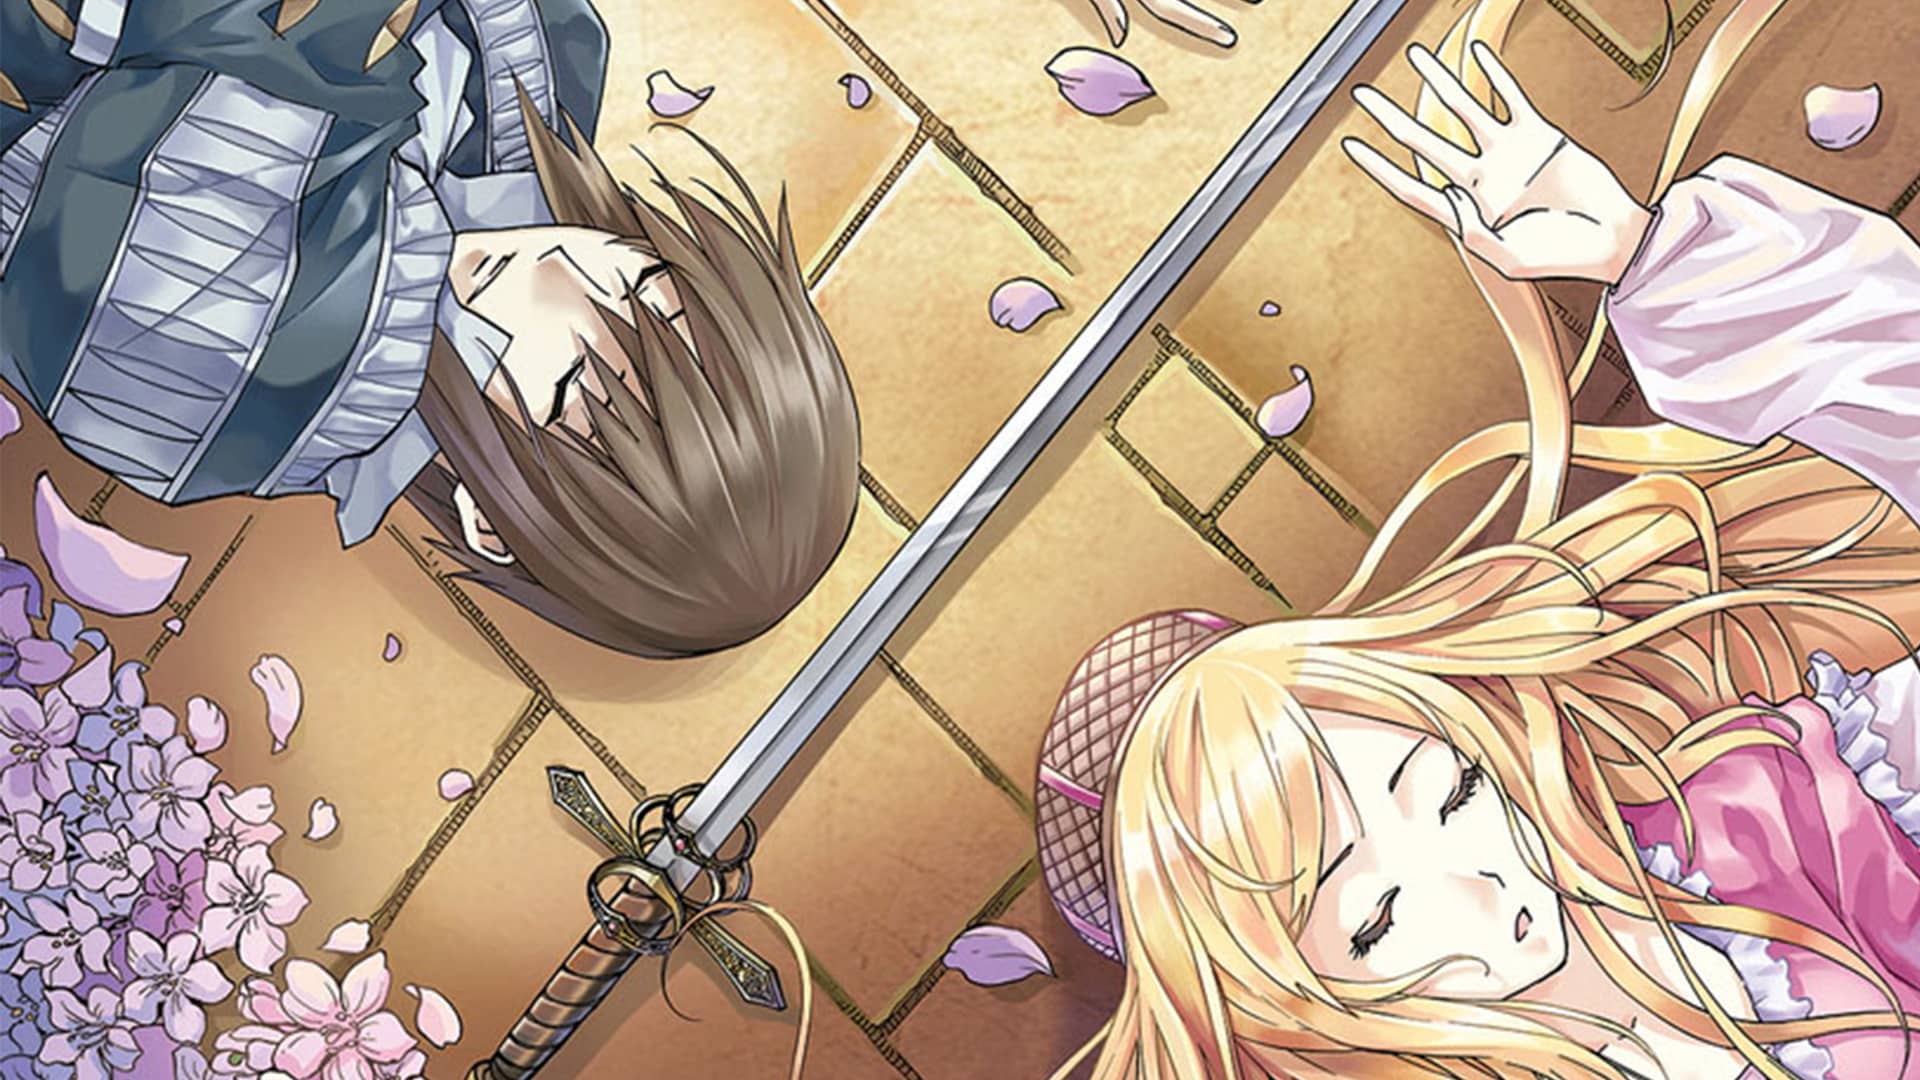 Review - Manga Classics: William Shakespeare’s Romeo and Juliet - Nerd On!